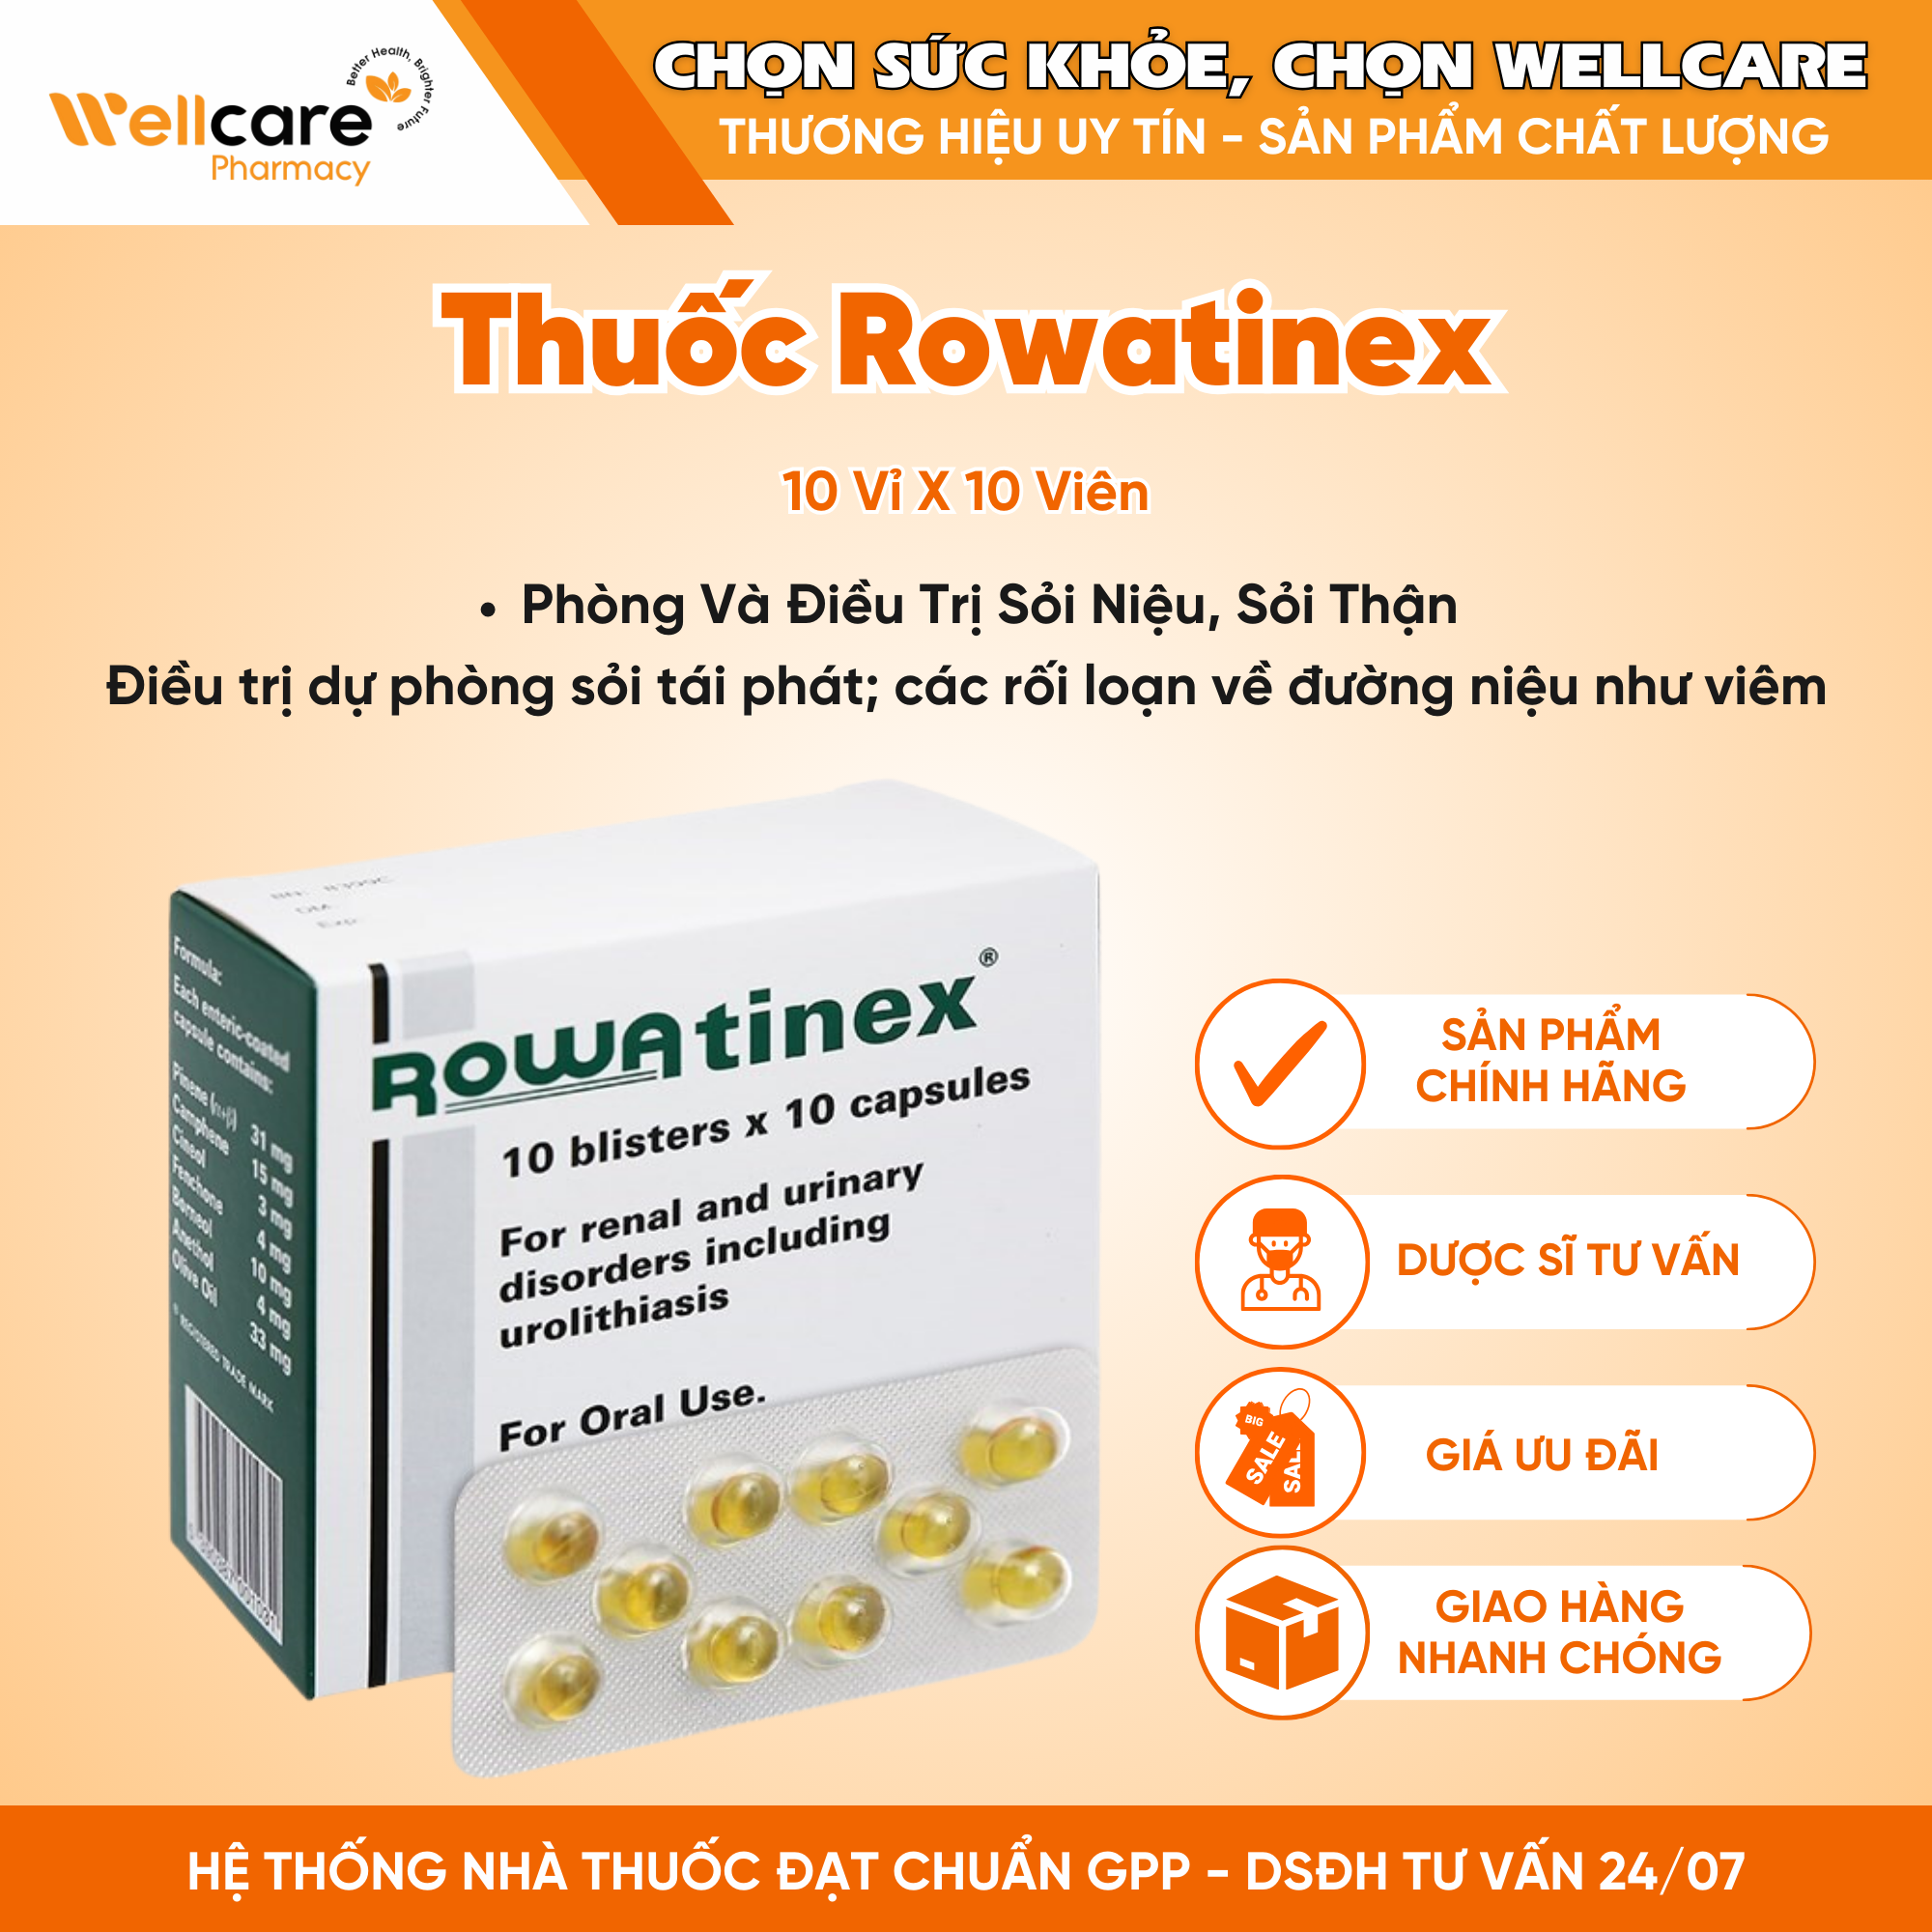 Thuốc Rowatinex phòng và điều trị sỏi niệu, sỏi thận (10 vỉ x 10 viên)